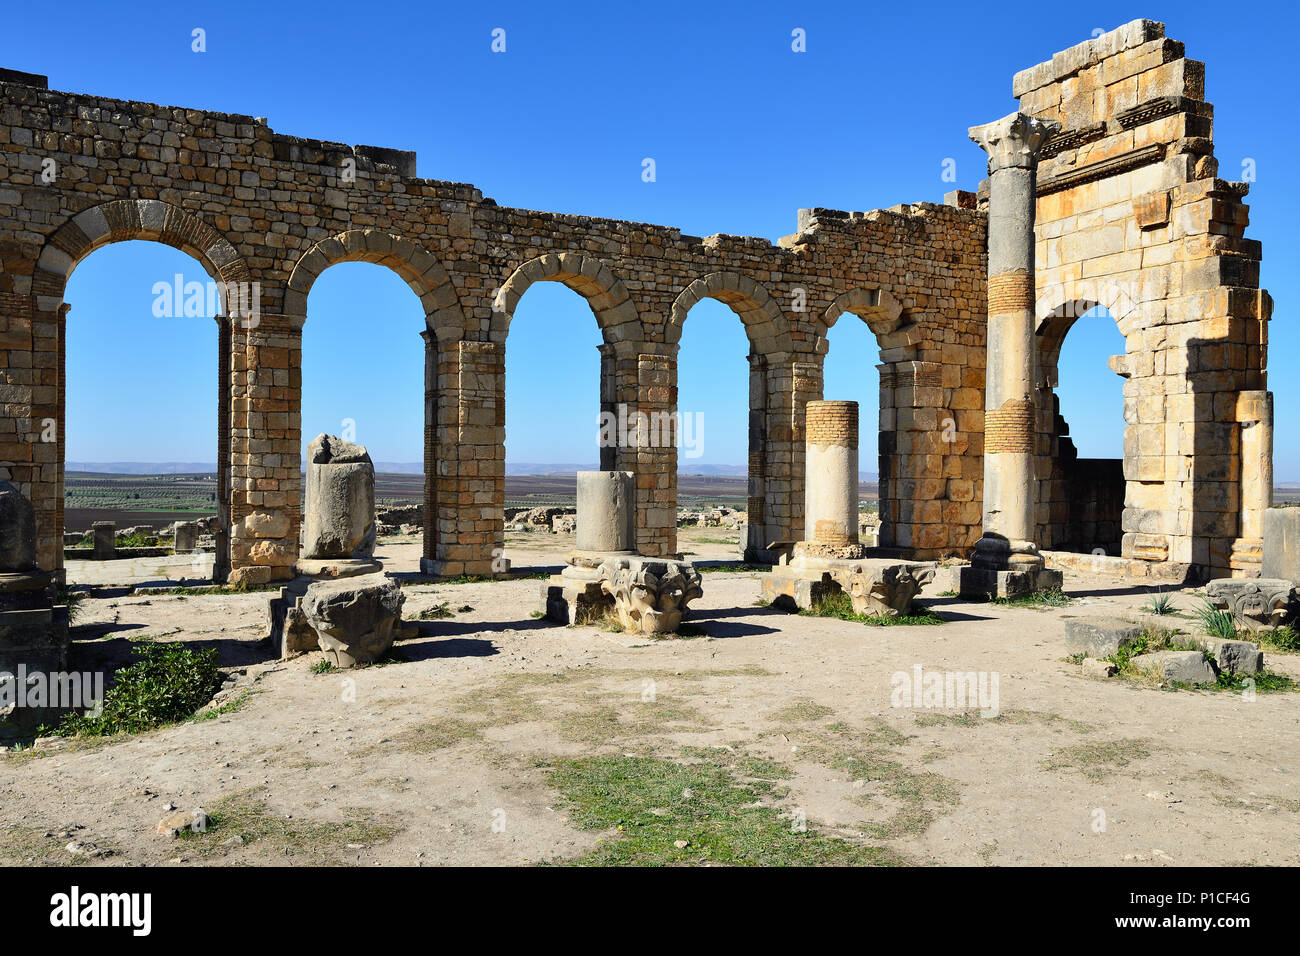 VOLUBILIS, Marocco - 29 novembre 2015: ampio complesso di rovine della città romana Volubilis - di antica città capitale della Mauritania nel centrale p Foto Stock